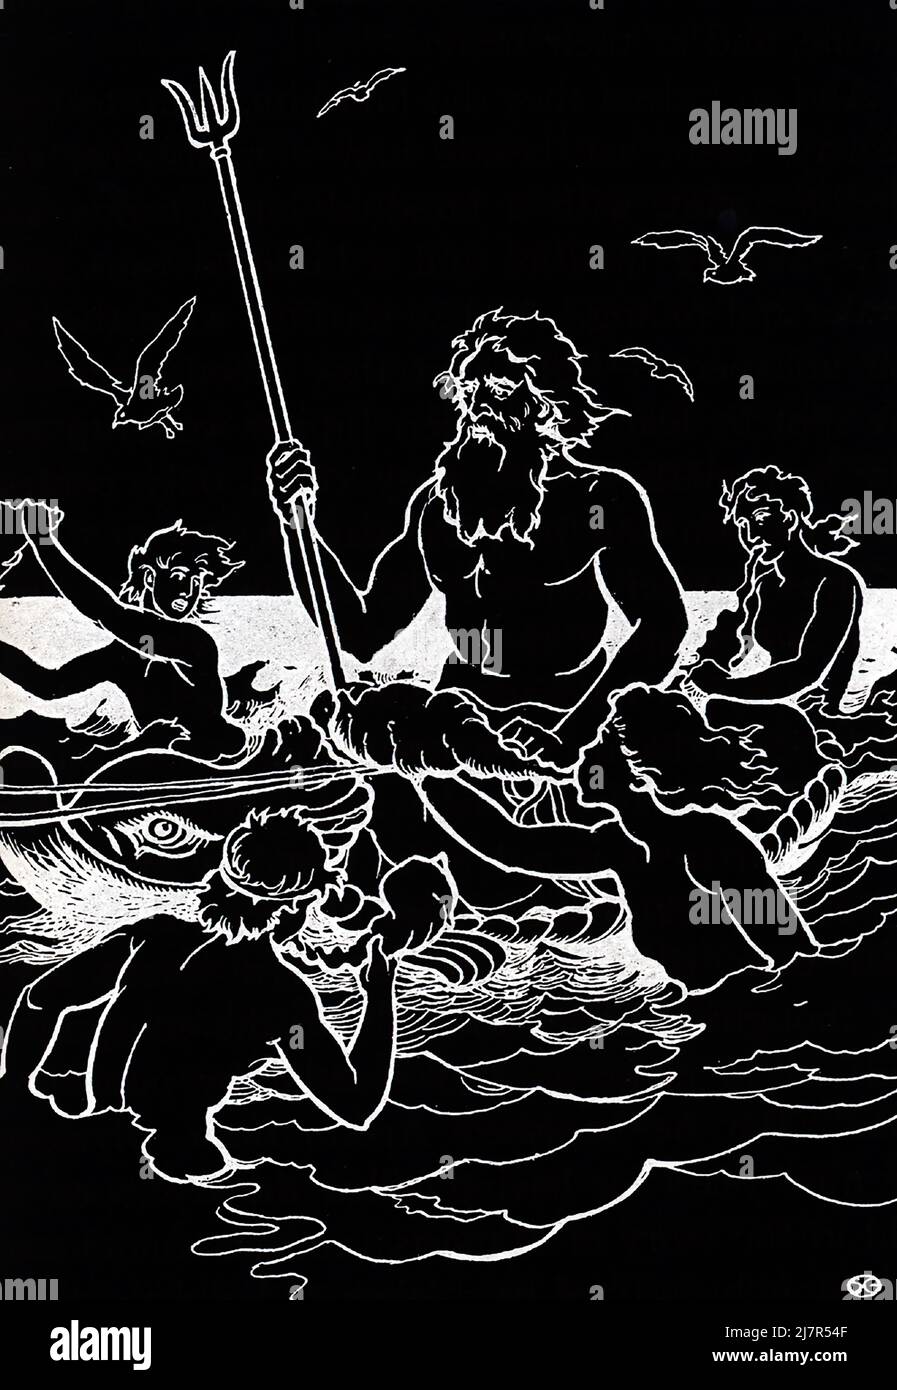 In der antiken römischen Mythologie war Neptun der gott des Meeres. Für die alten Griechen war er Poseidon. Er wird oft mit langen Haaren gezeigt und trägt einen bärtigen, sowie einen Dreizack, einen dreizackigen Speer, der zum Fischen verwendet wird und der oft mit diesem gott in Verbindung gebracht wird. Stockfoto